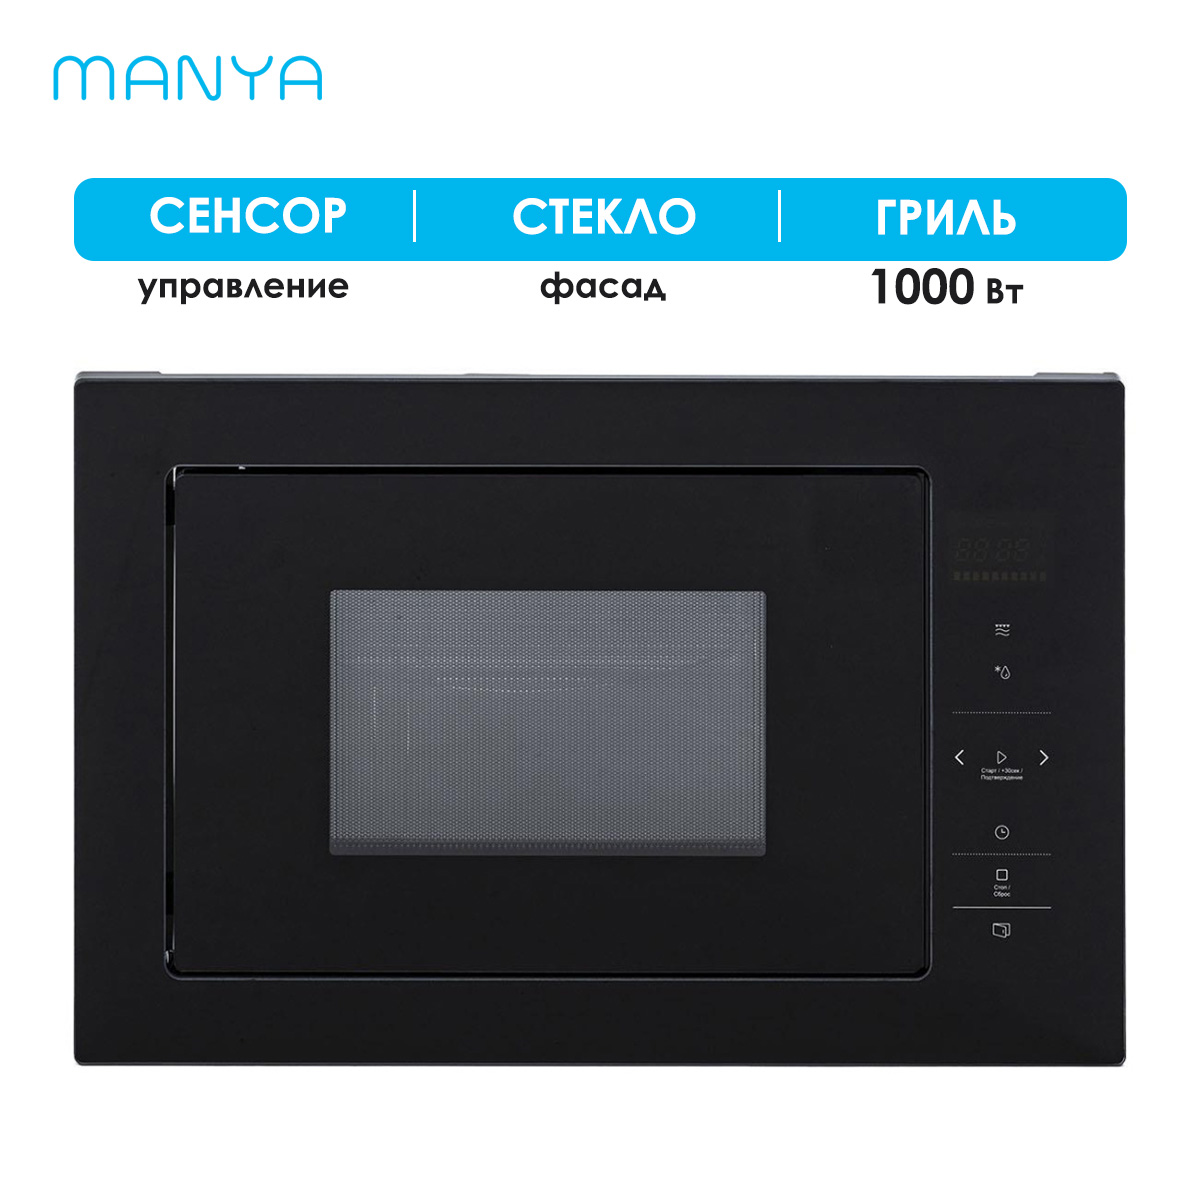 Встраиваемая микроволновая печь Manya BM2511BG черная встраиваемая микроволновая печь korting kmi 820 gnbx черная